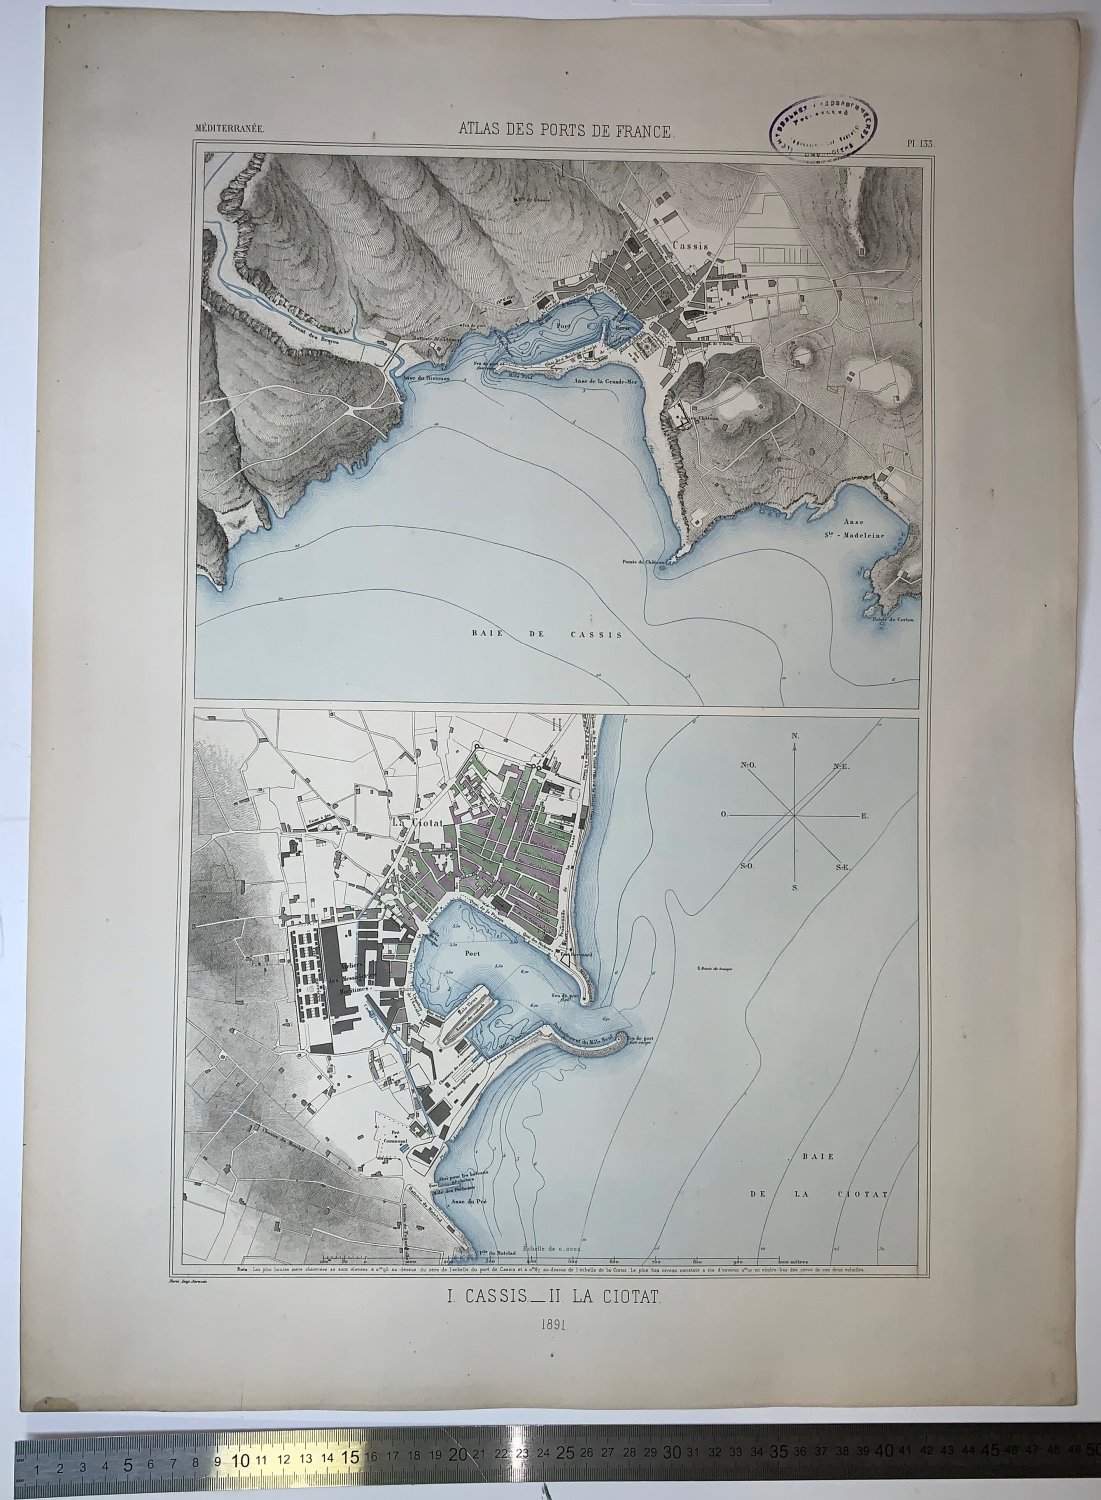 Atlas des ports de France. I. Cassis. II. La Ciotat